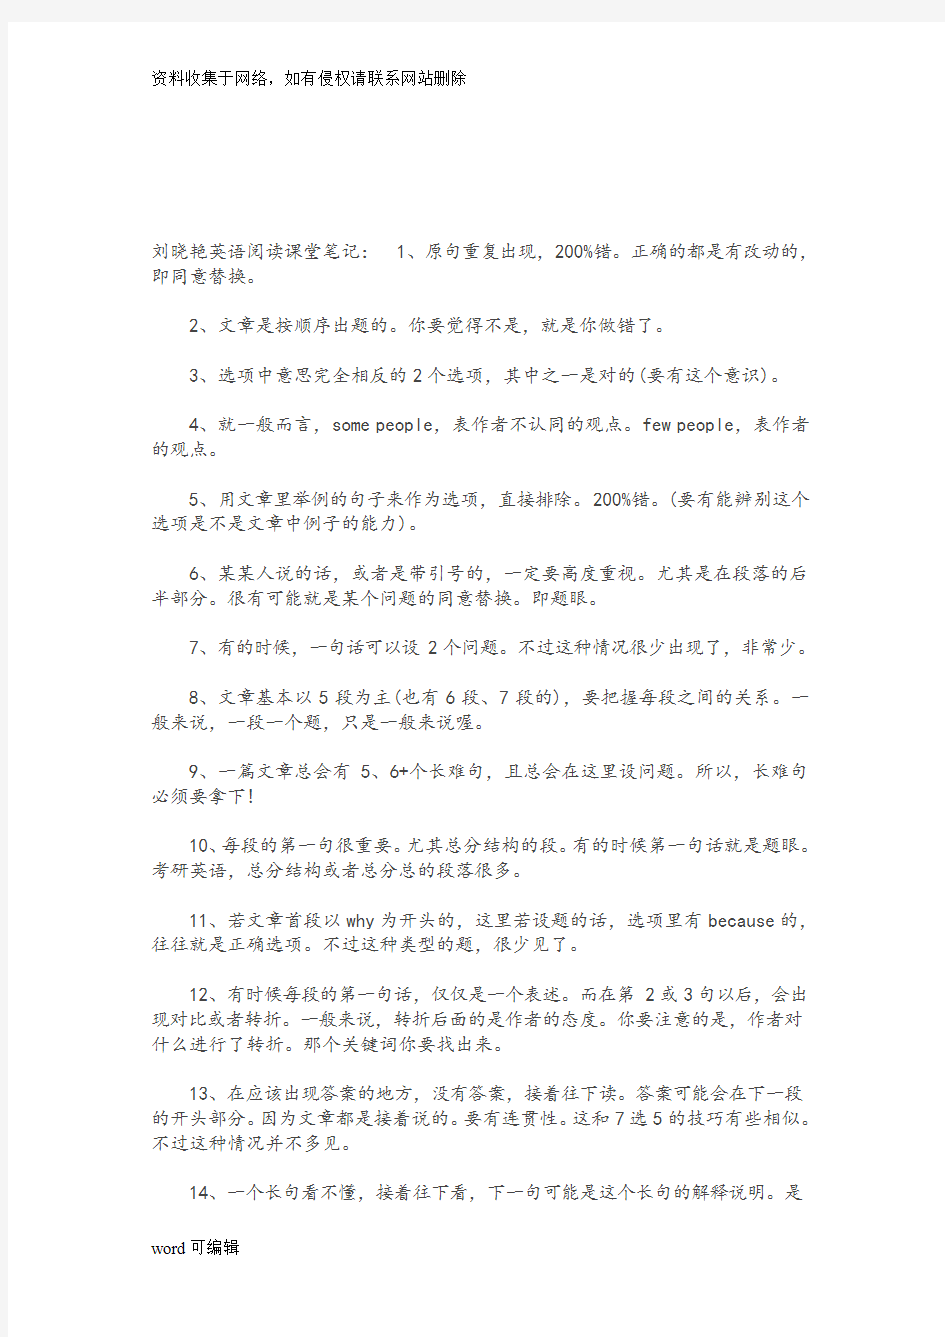 刘晓艳考研英语笔记教案资料